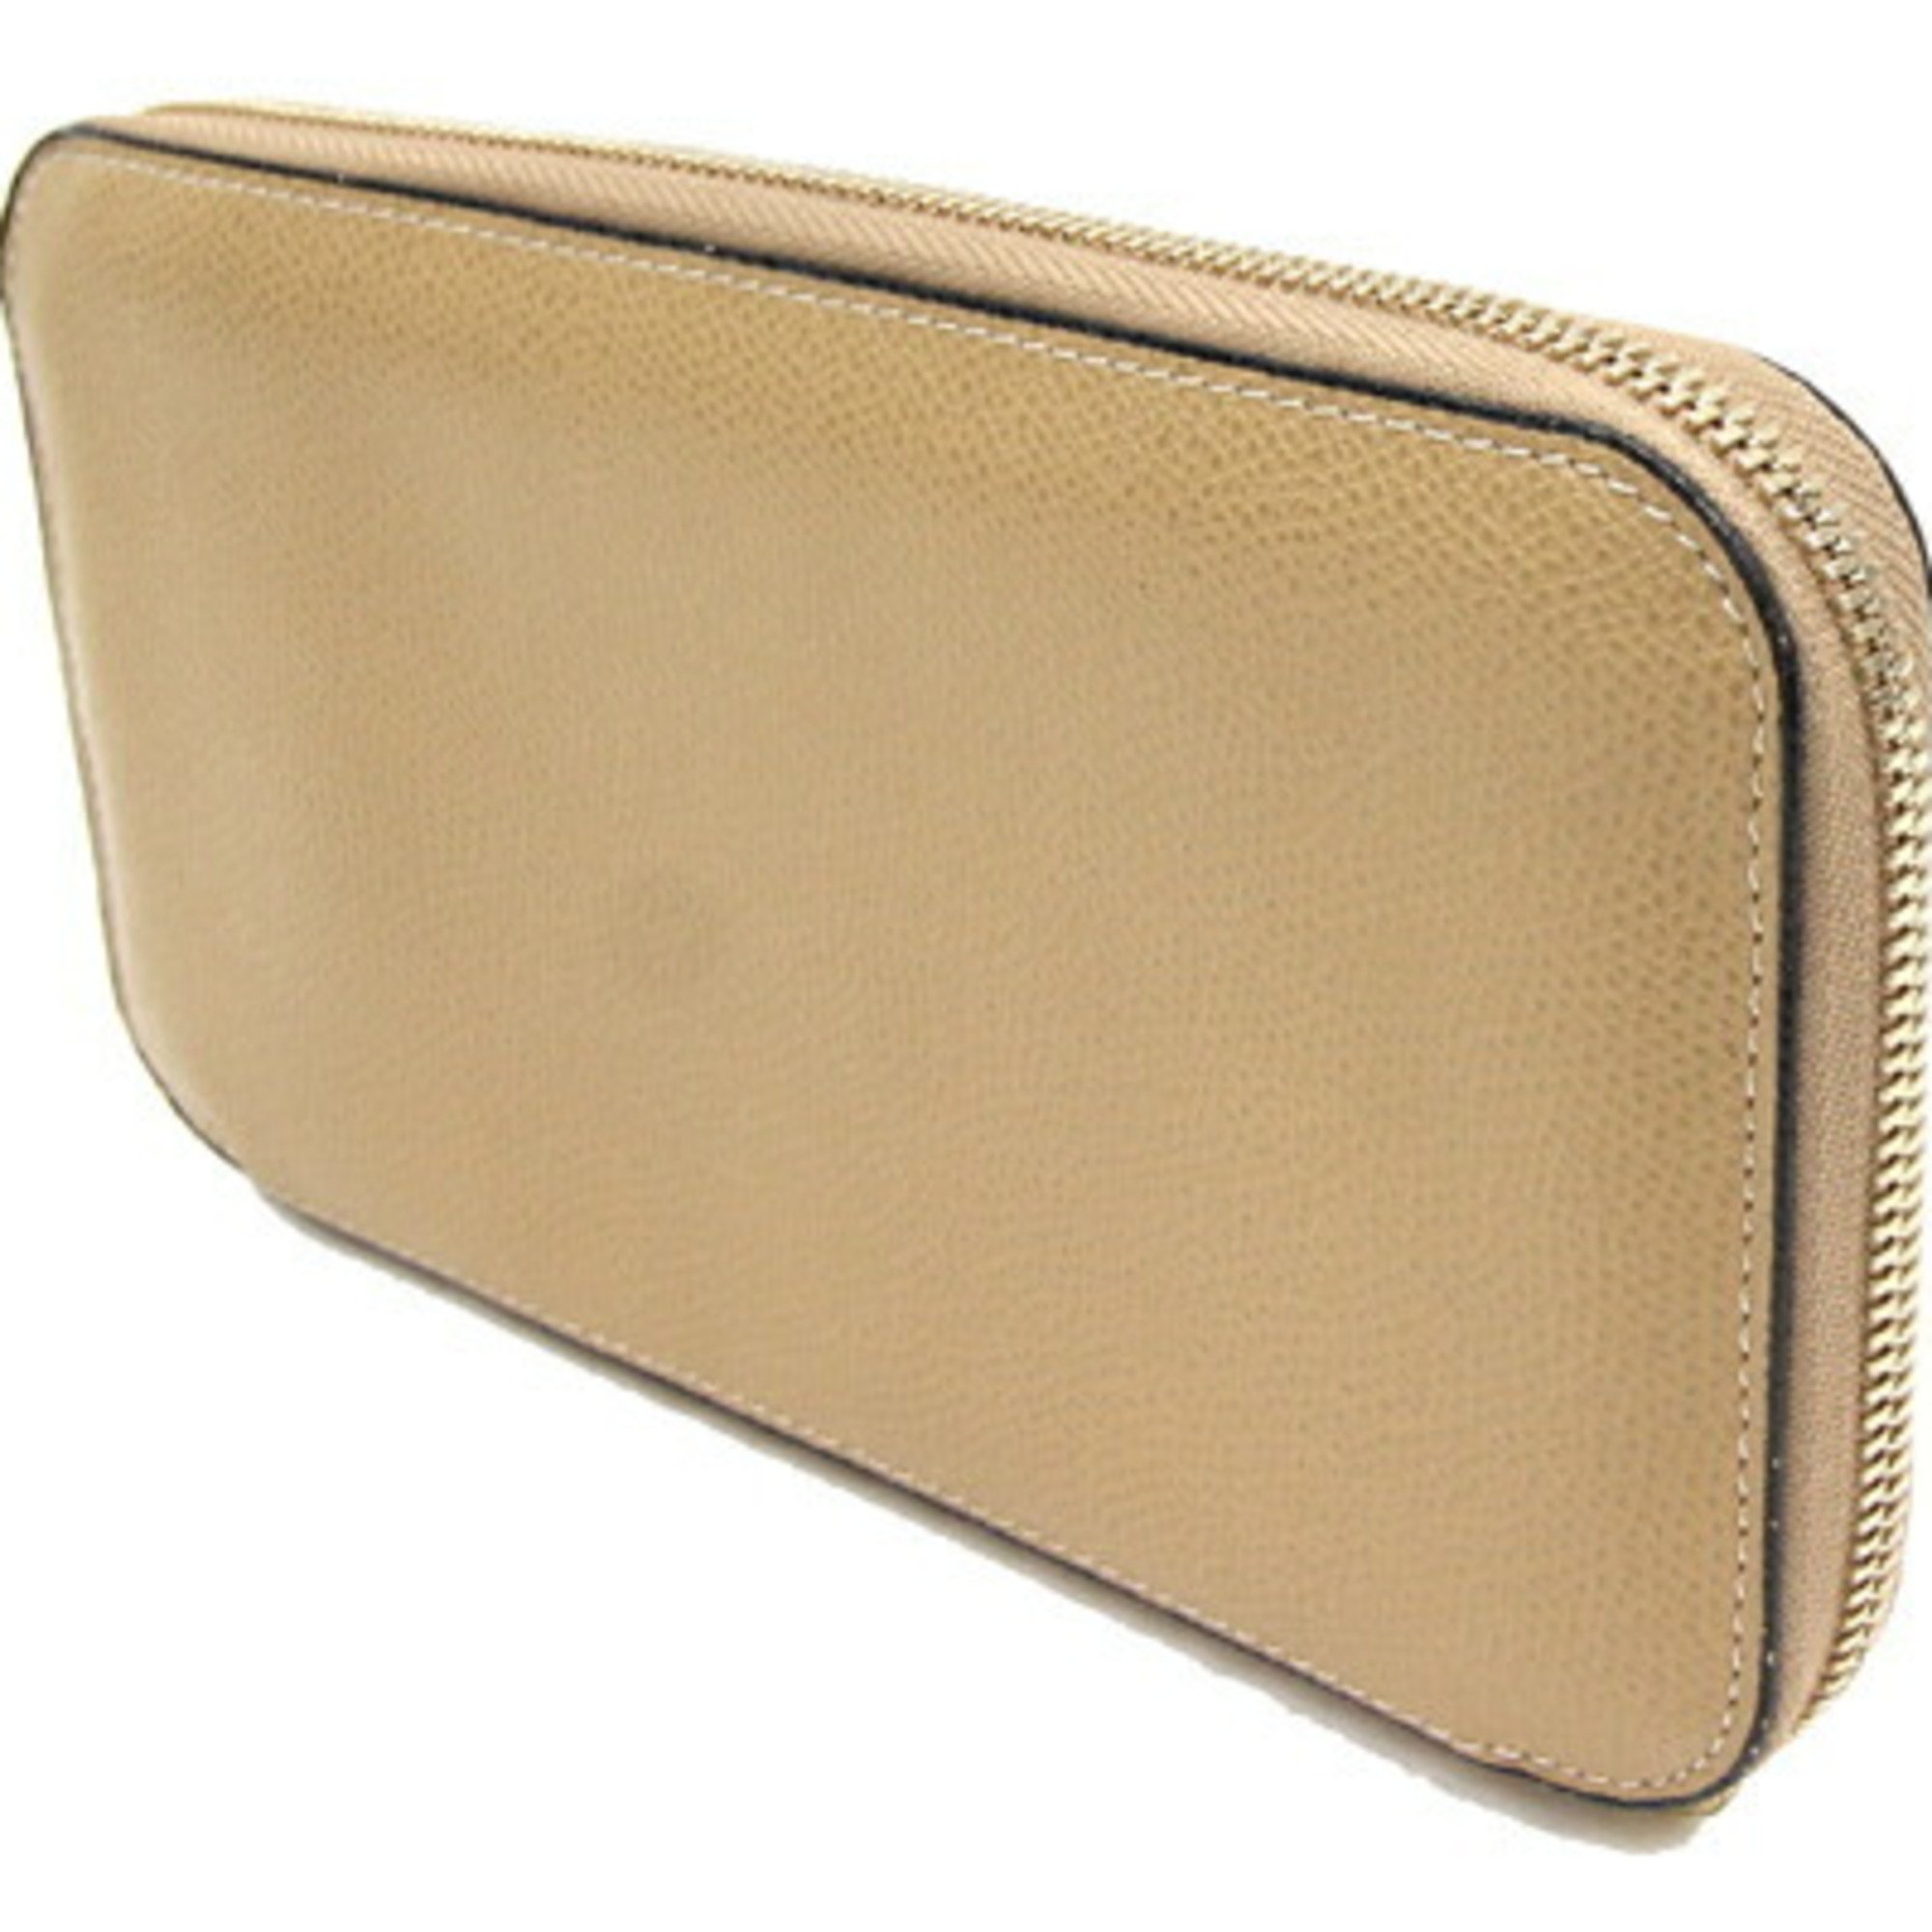 Valextra Round Long Wallet Zip 12 Card V9L06-029 Beige Leather Passport Storage Ladies Men